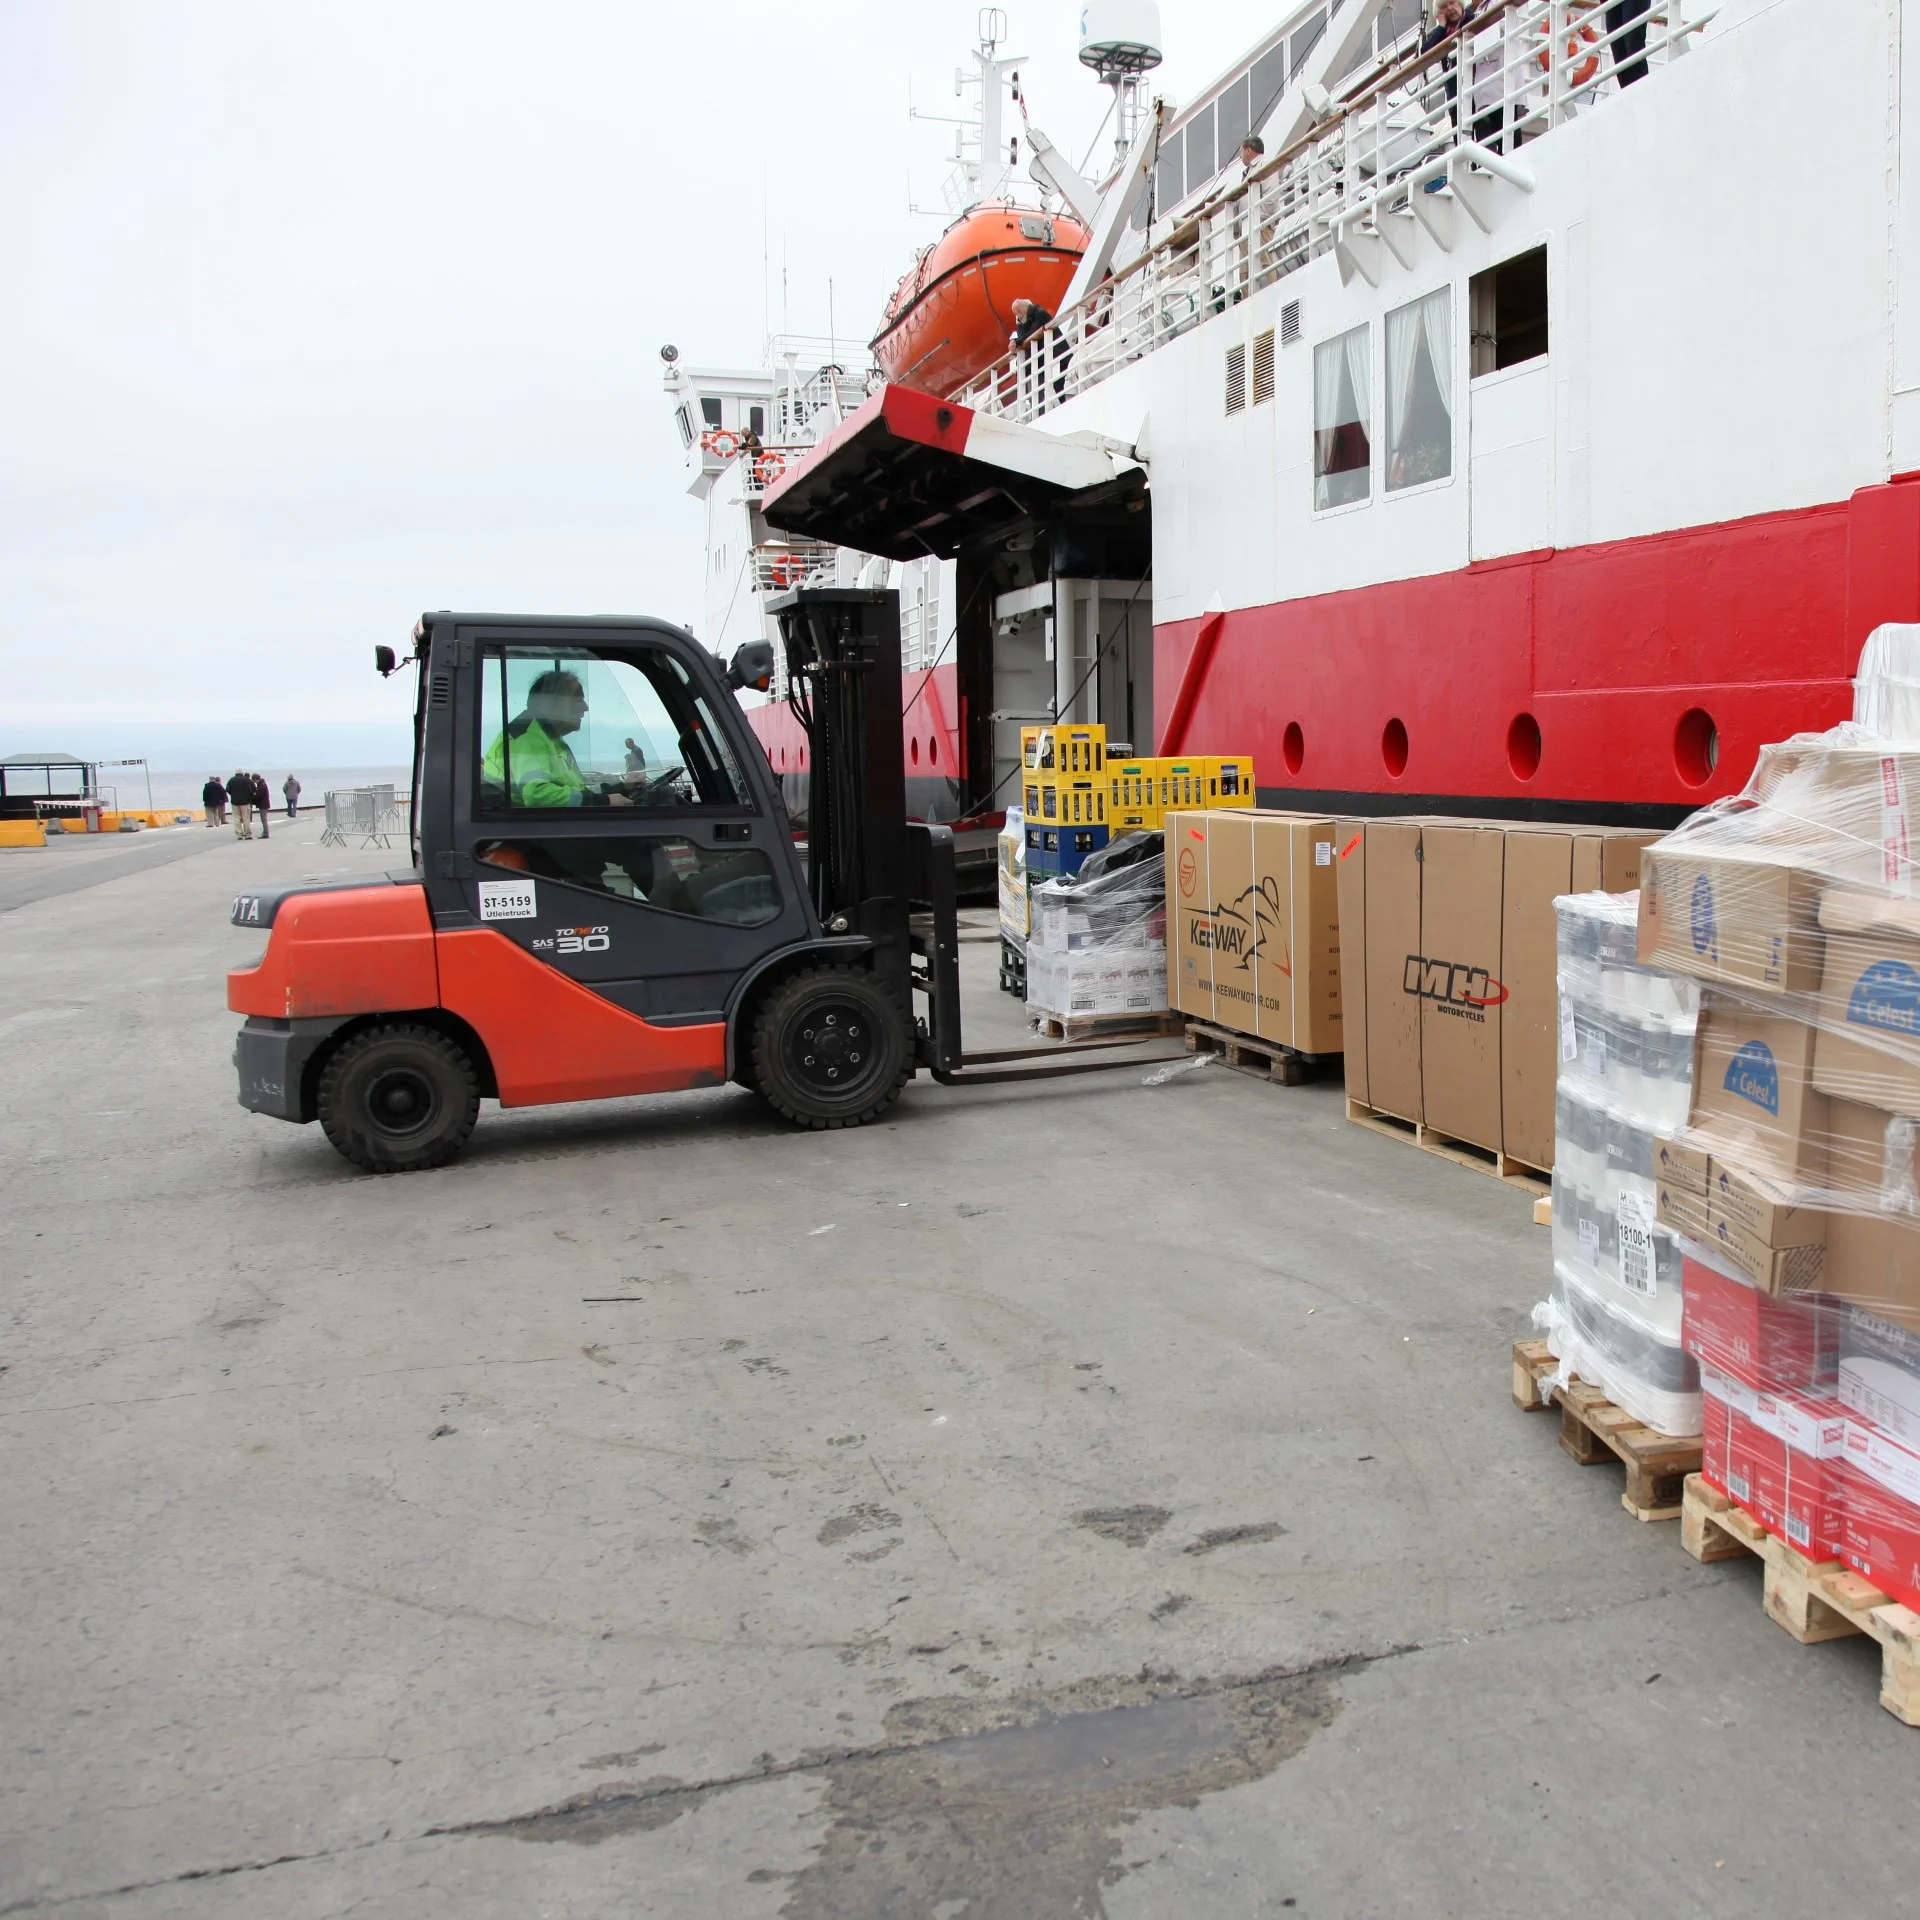 Truck adding cargo to a Hurtigruten ship